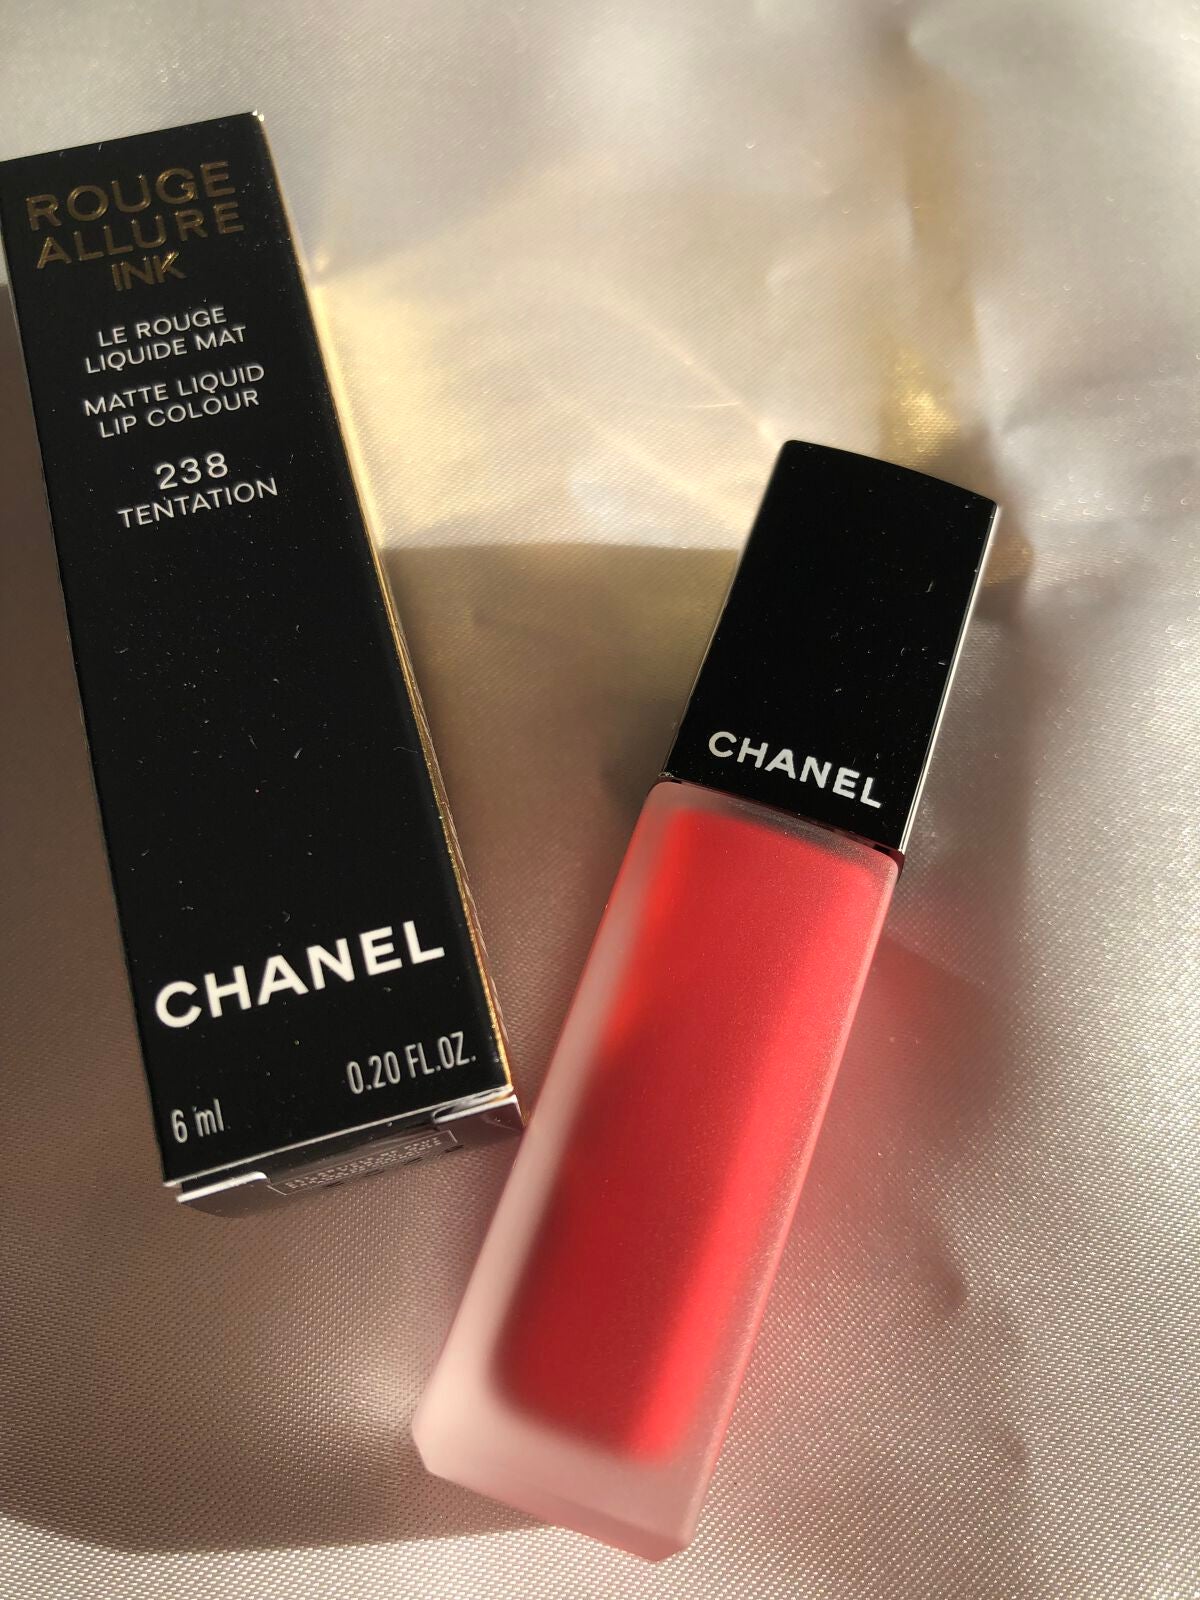 Chanel Tentation (238) Rouge Allure Ink Matte Liquid Lip Colour